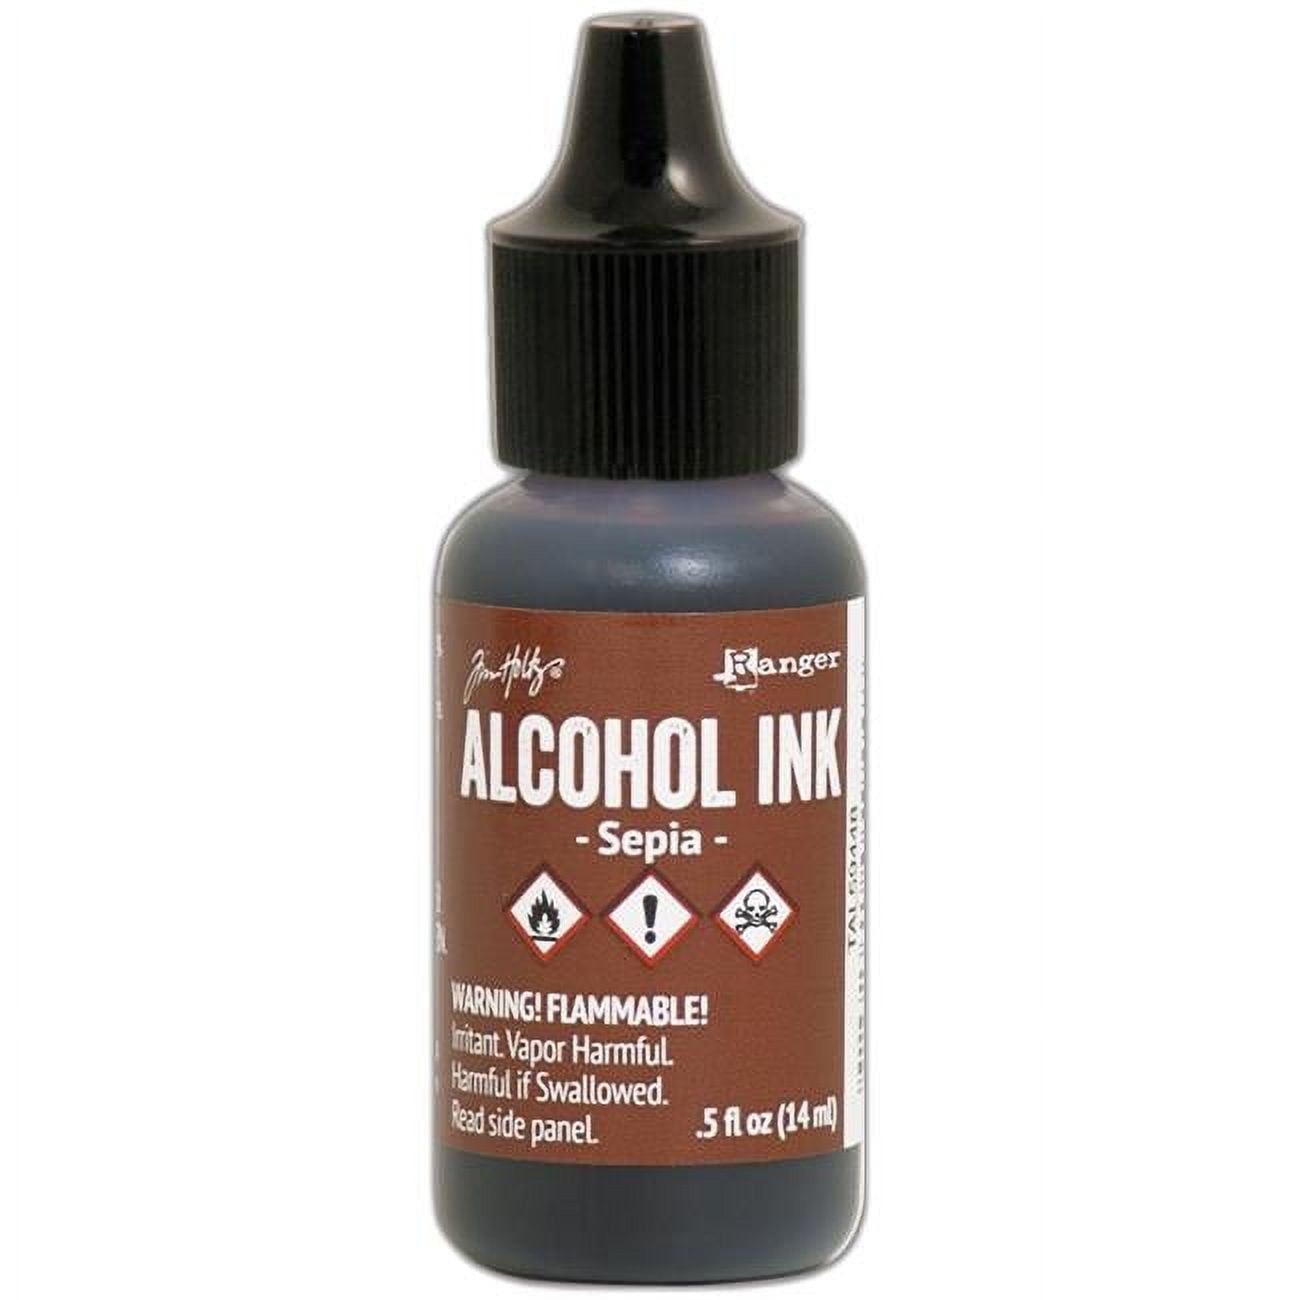 Alcohol Blending Solution for Ink - Large 4oz Ink Blending Solution - Works with All Alcohol Inks - with Applicator Tip, Applicator Bottle and Funnel